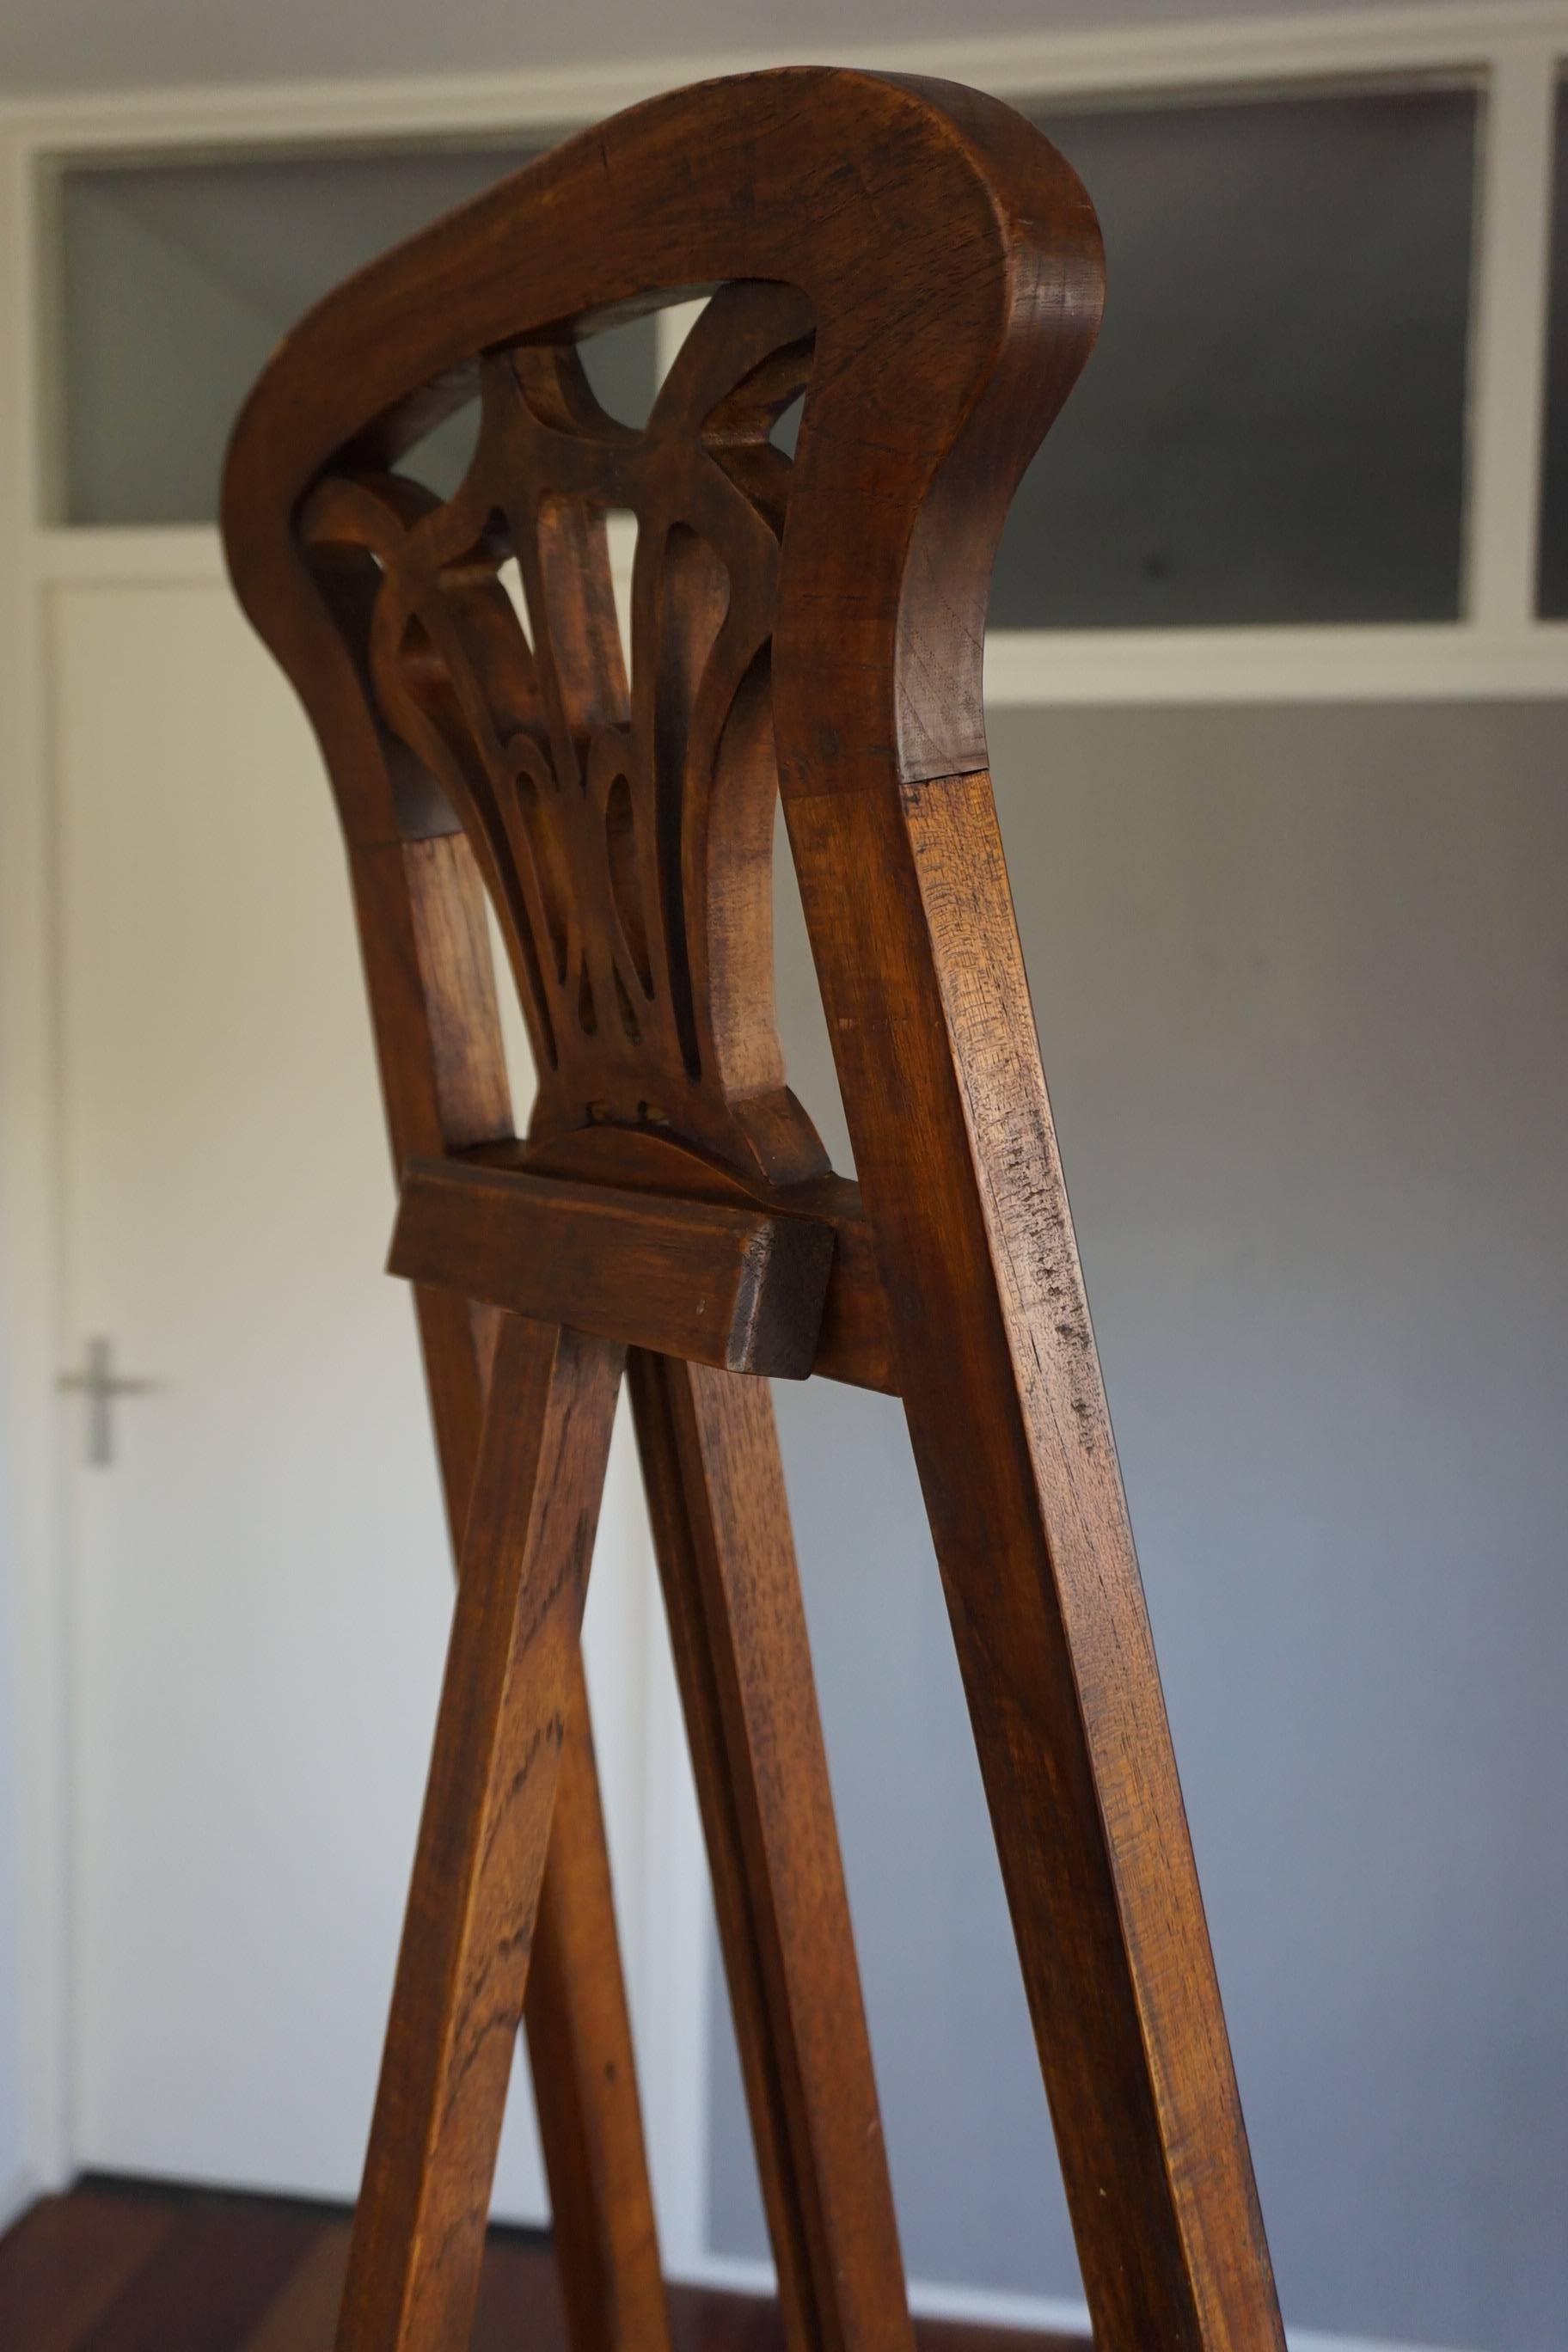 Hand-Crafted Handcrafted Teakwood Jugendstil / Art Nouveau Floor Easel / Artist Display Stand